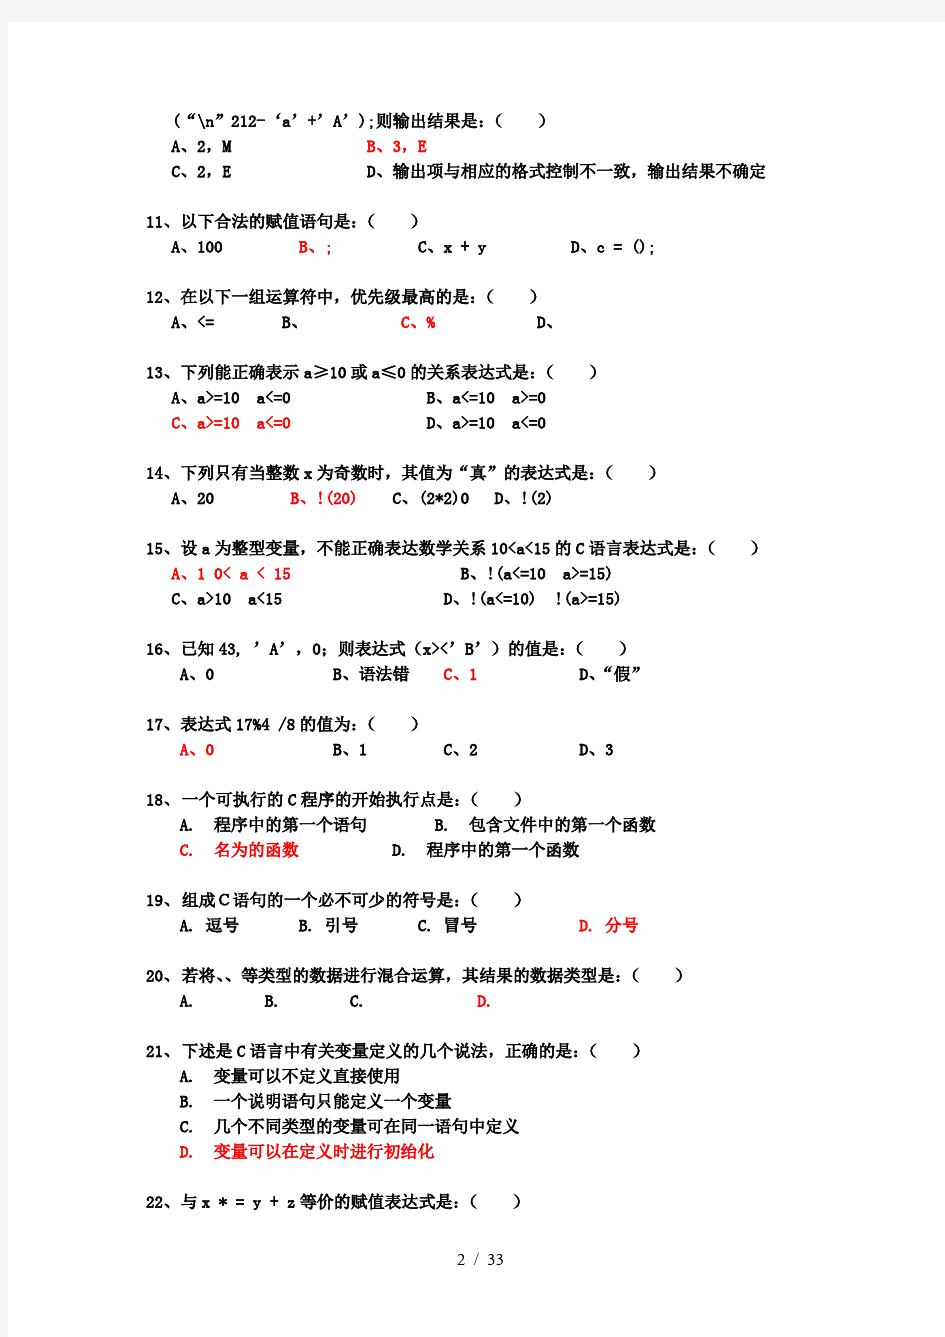 谭浩强第四版C语言练习题附有答案